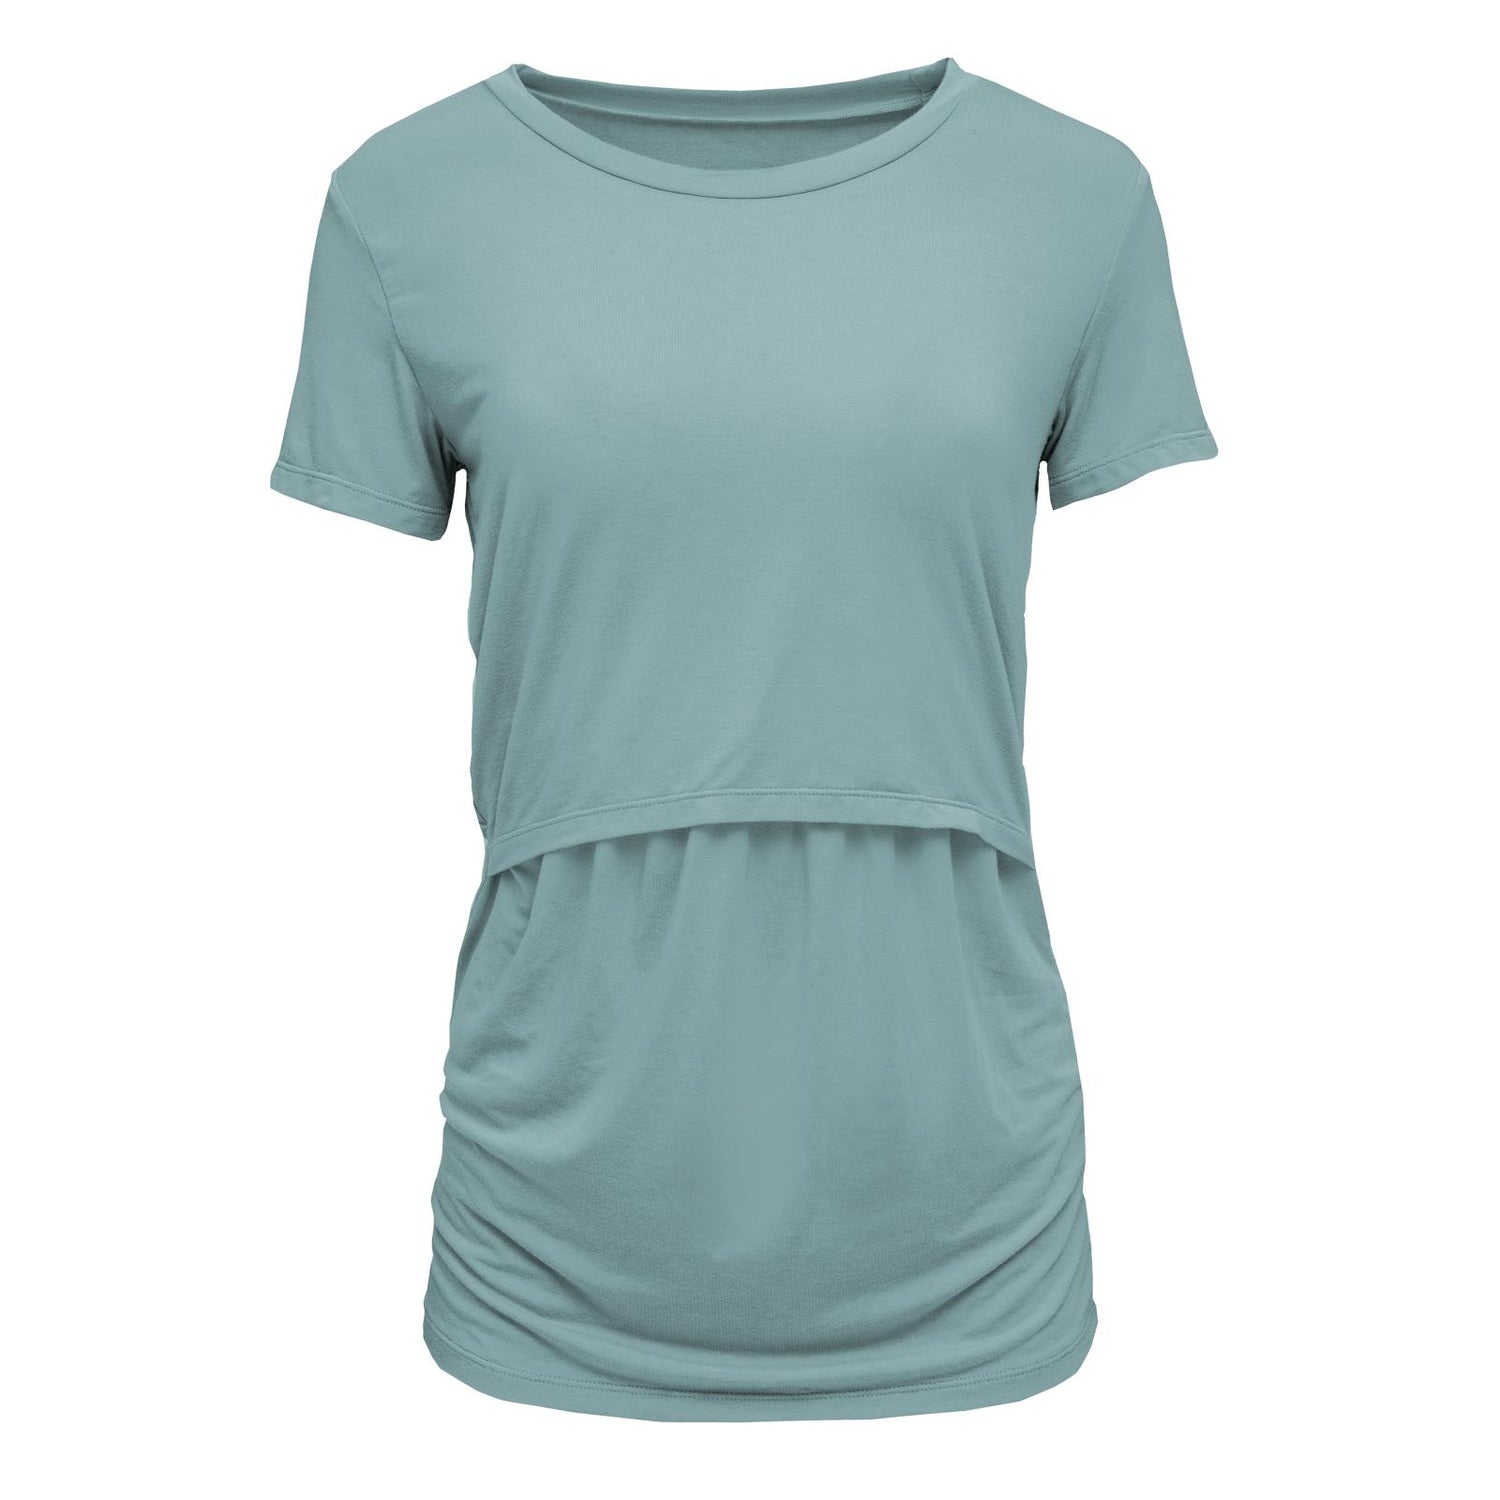 Women's Solid Short Sleeve Nursing Tee in Jade